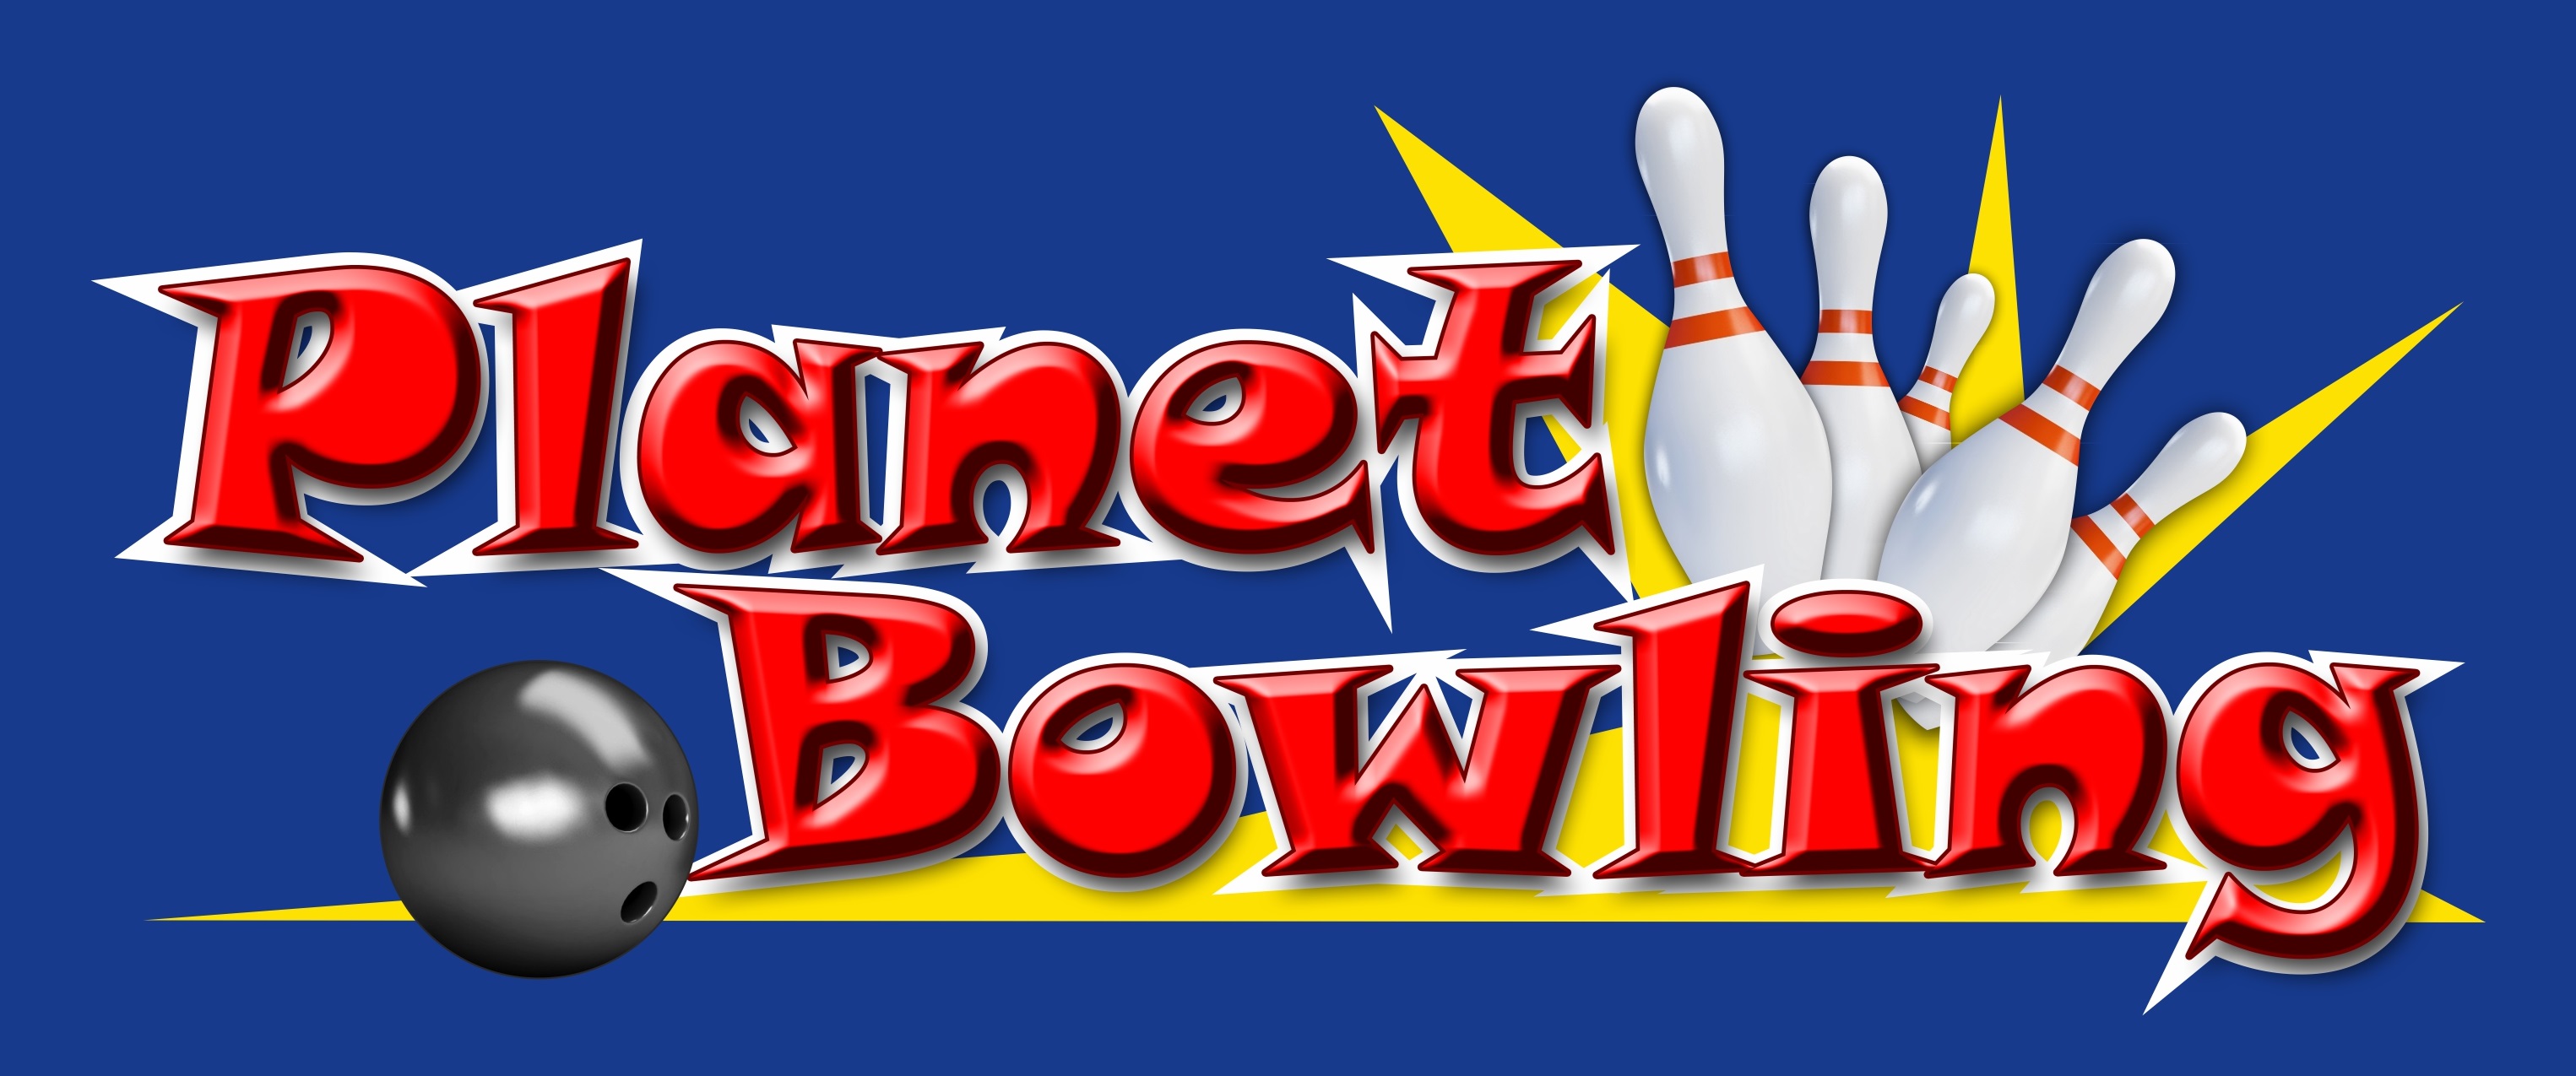 Planet Bowling